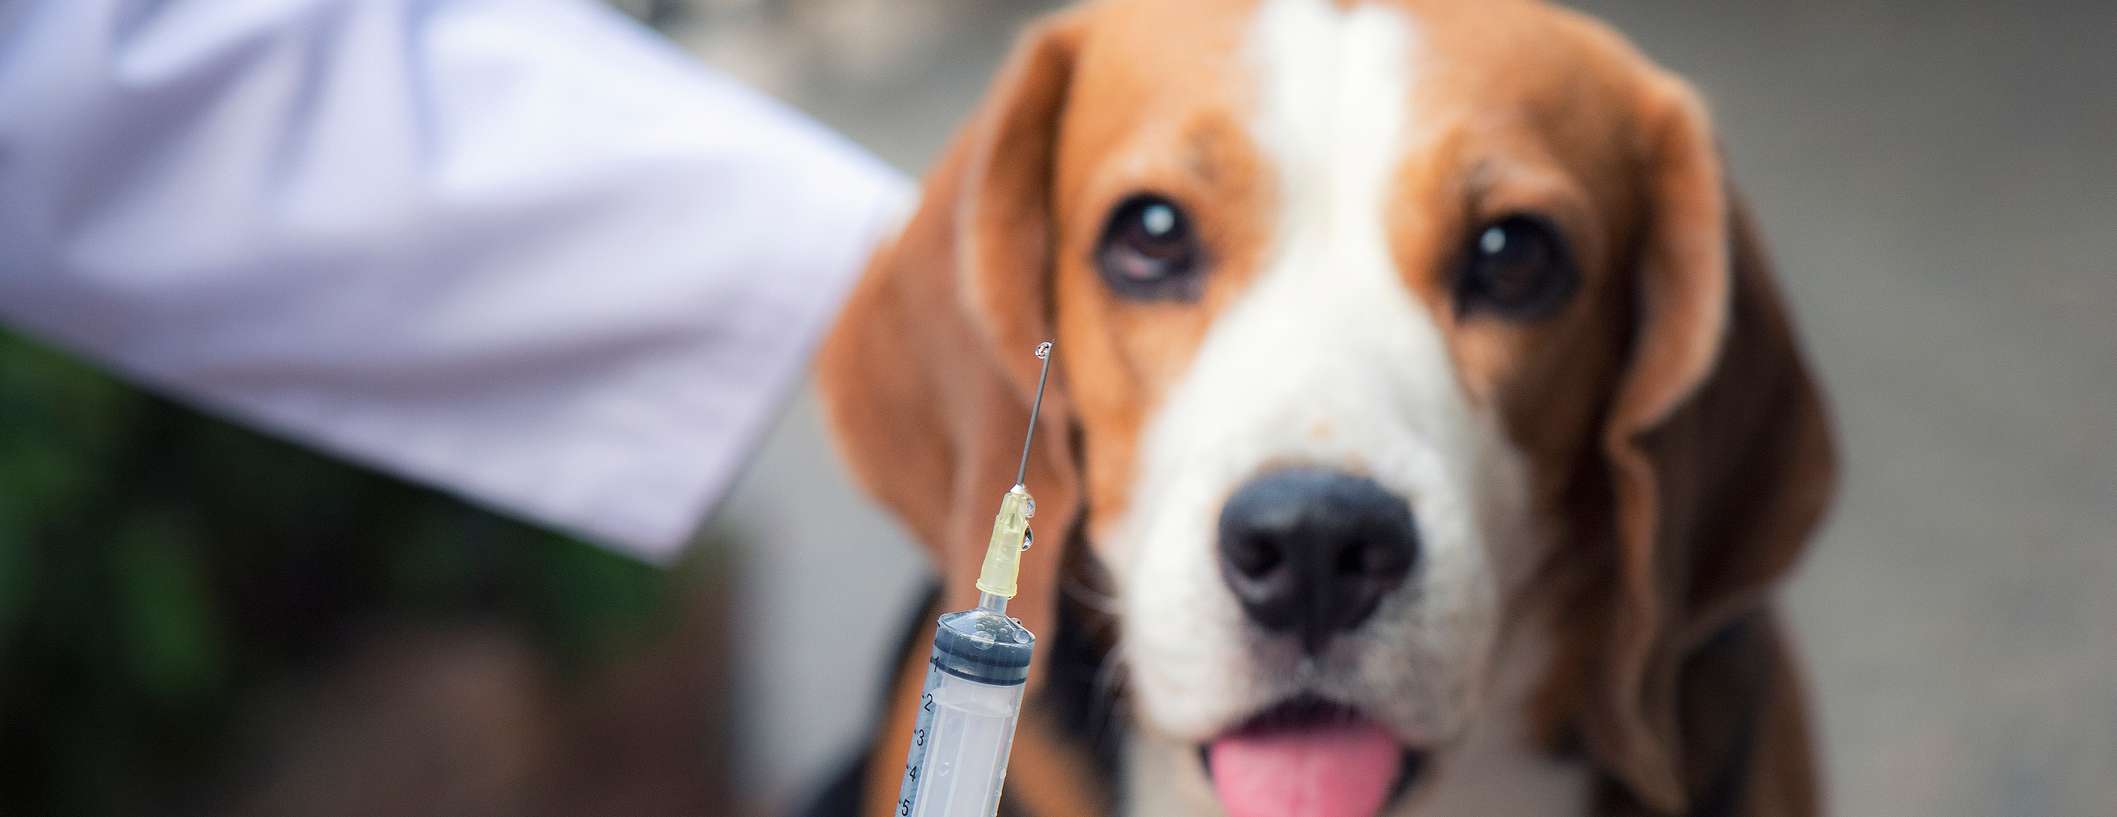 Allianz - Hund Tollwutimpfung: Hund visiert Spritze an